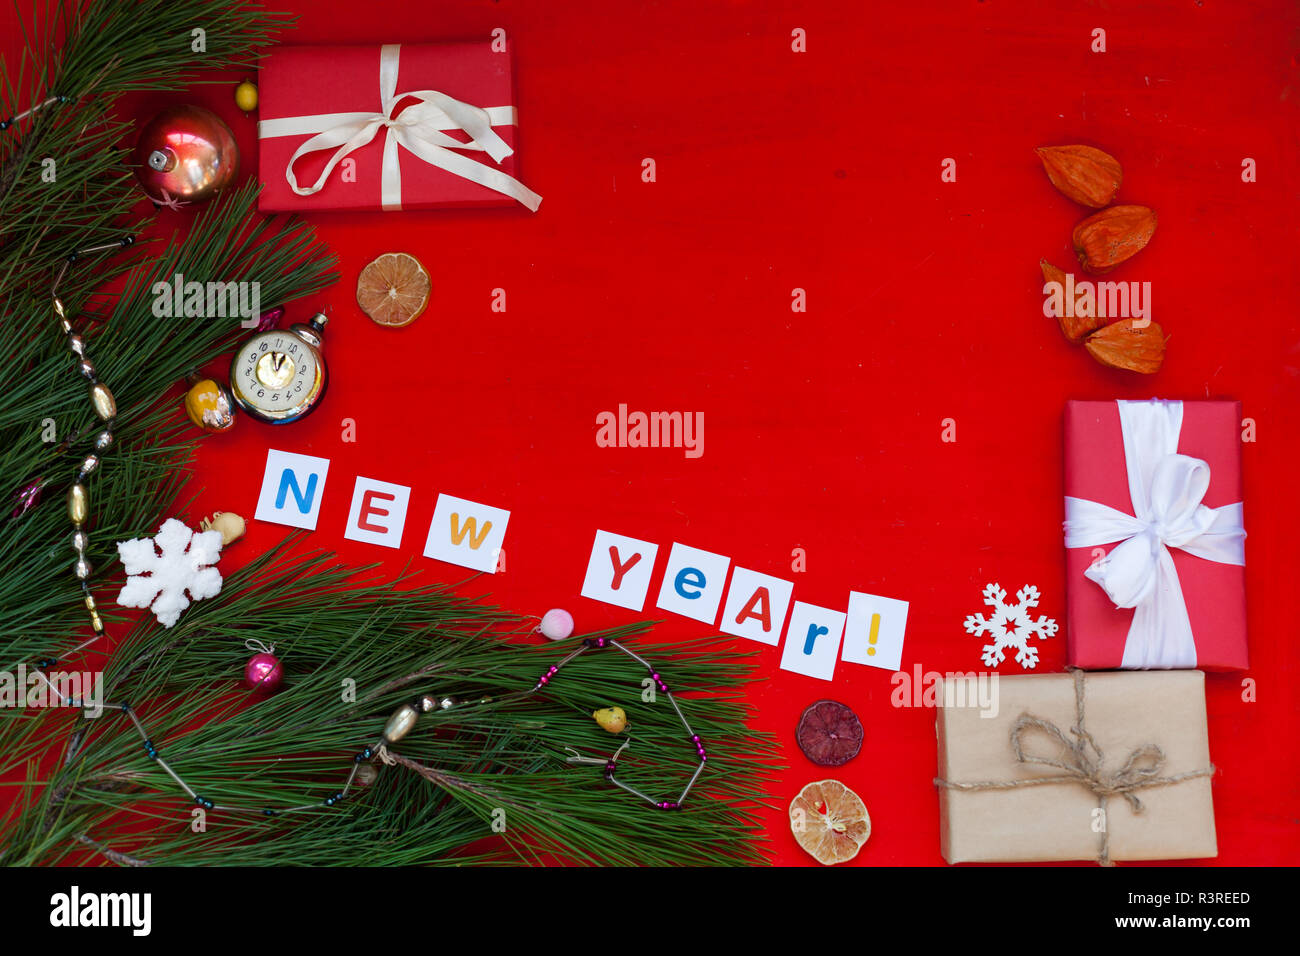 I Regali Di Natale 2020.Inverno Sfondo Di Natale Albero Di Natale Regali Di Natale Nuovo Anno 2019 2020 Foto Stock Alamy